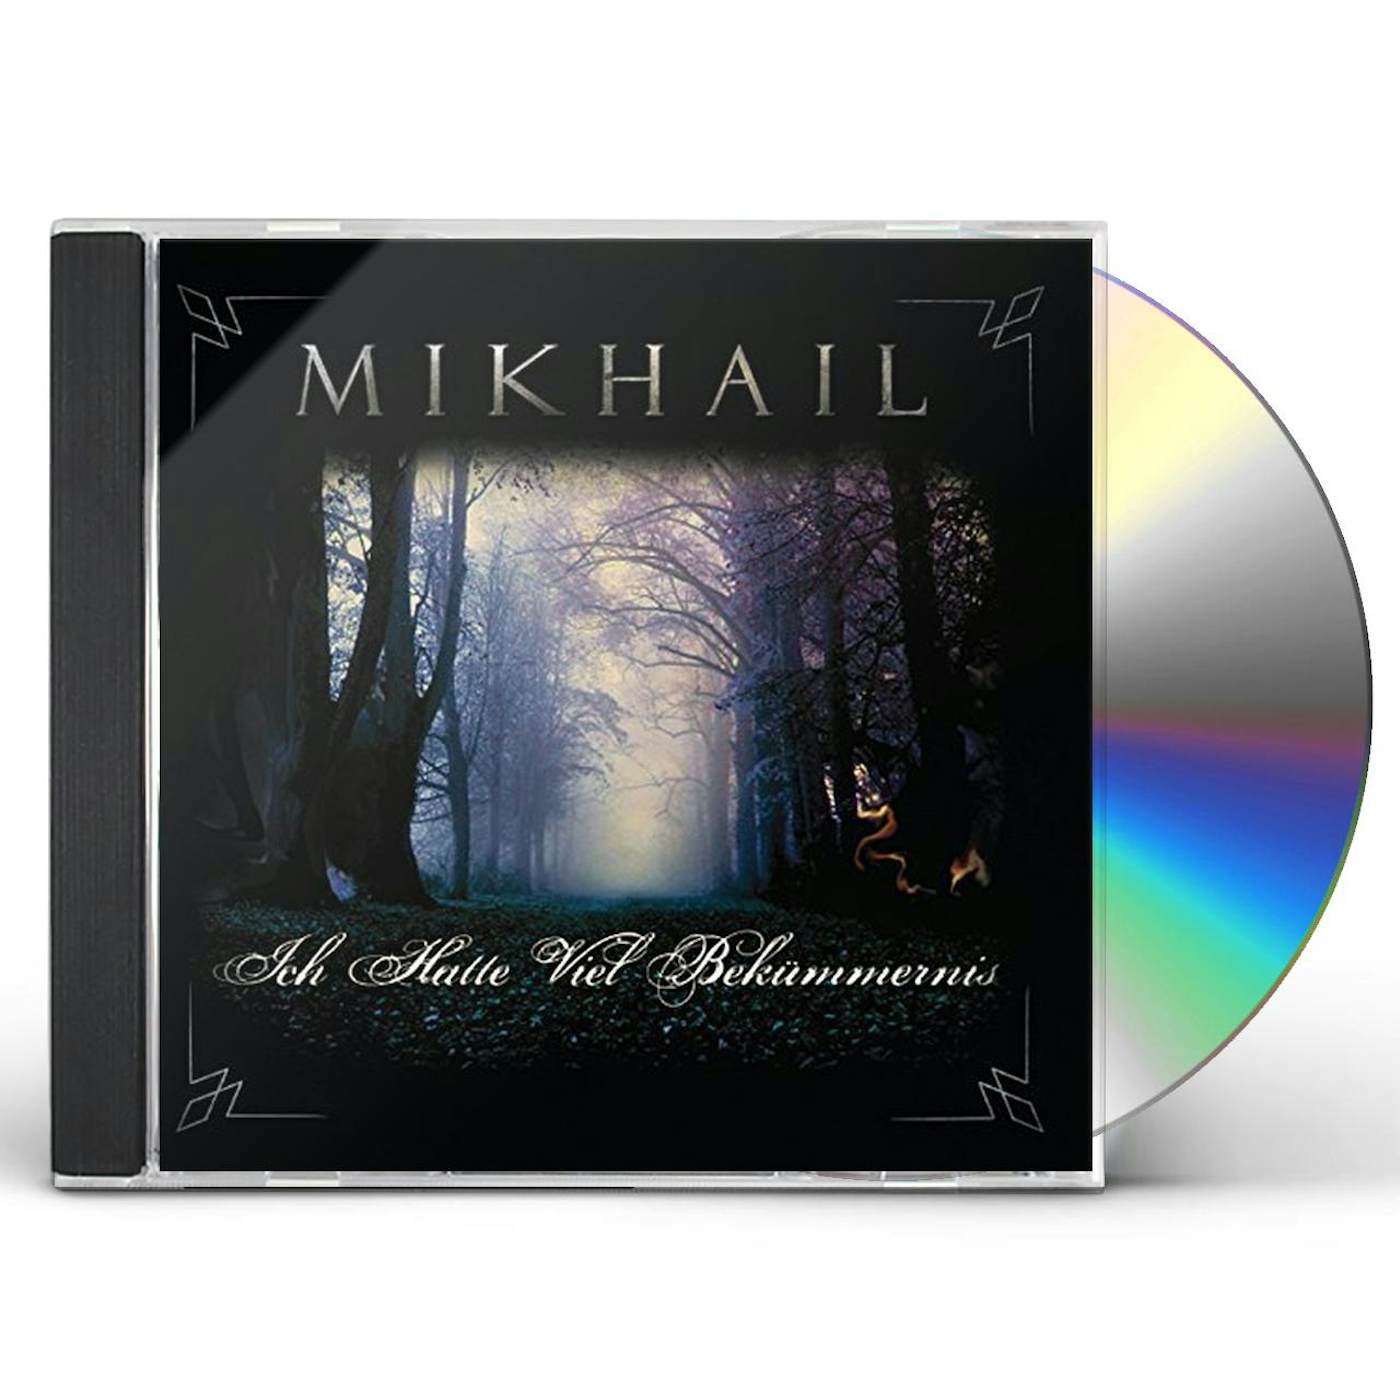 Mikhail ICH HATTE VIEL BEKUMMERNIS CD